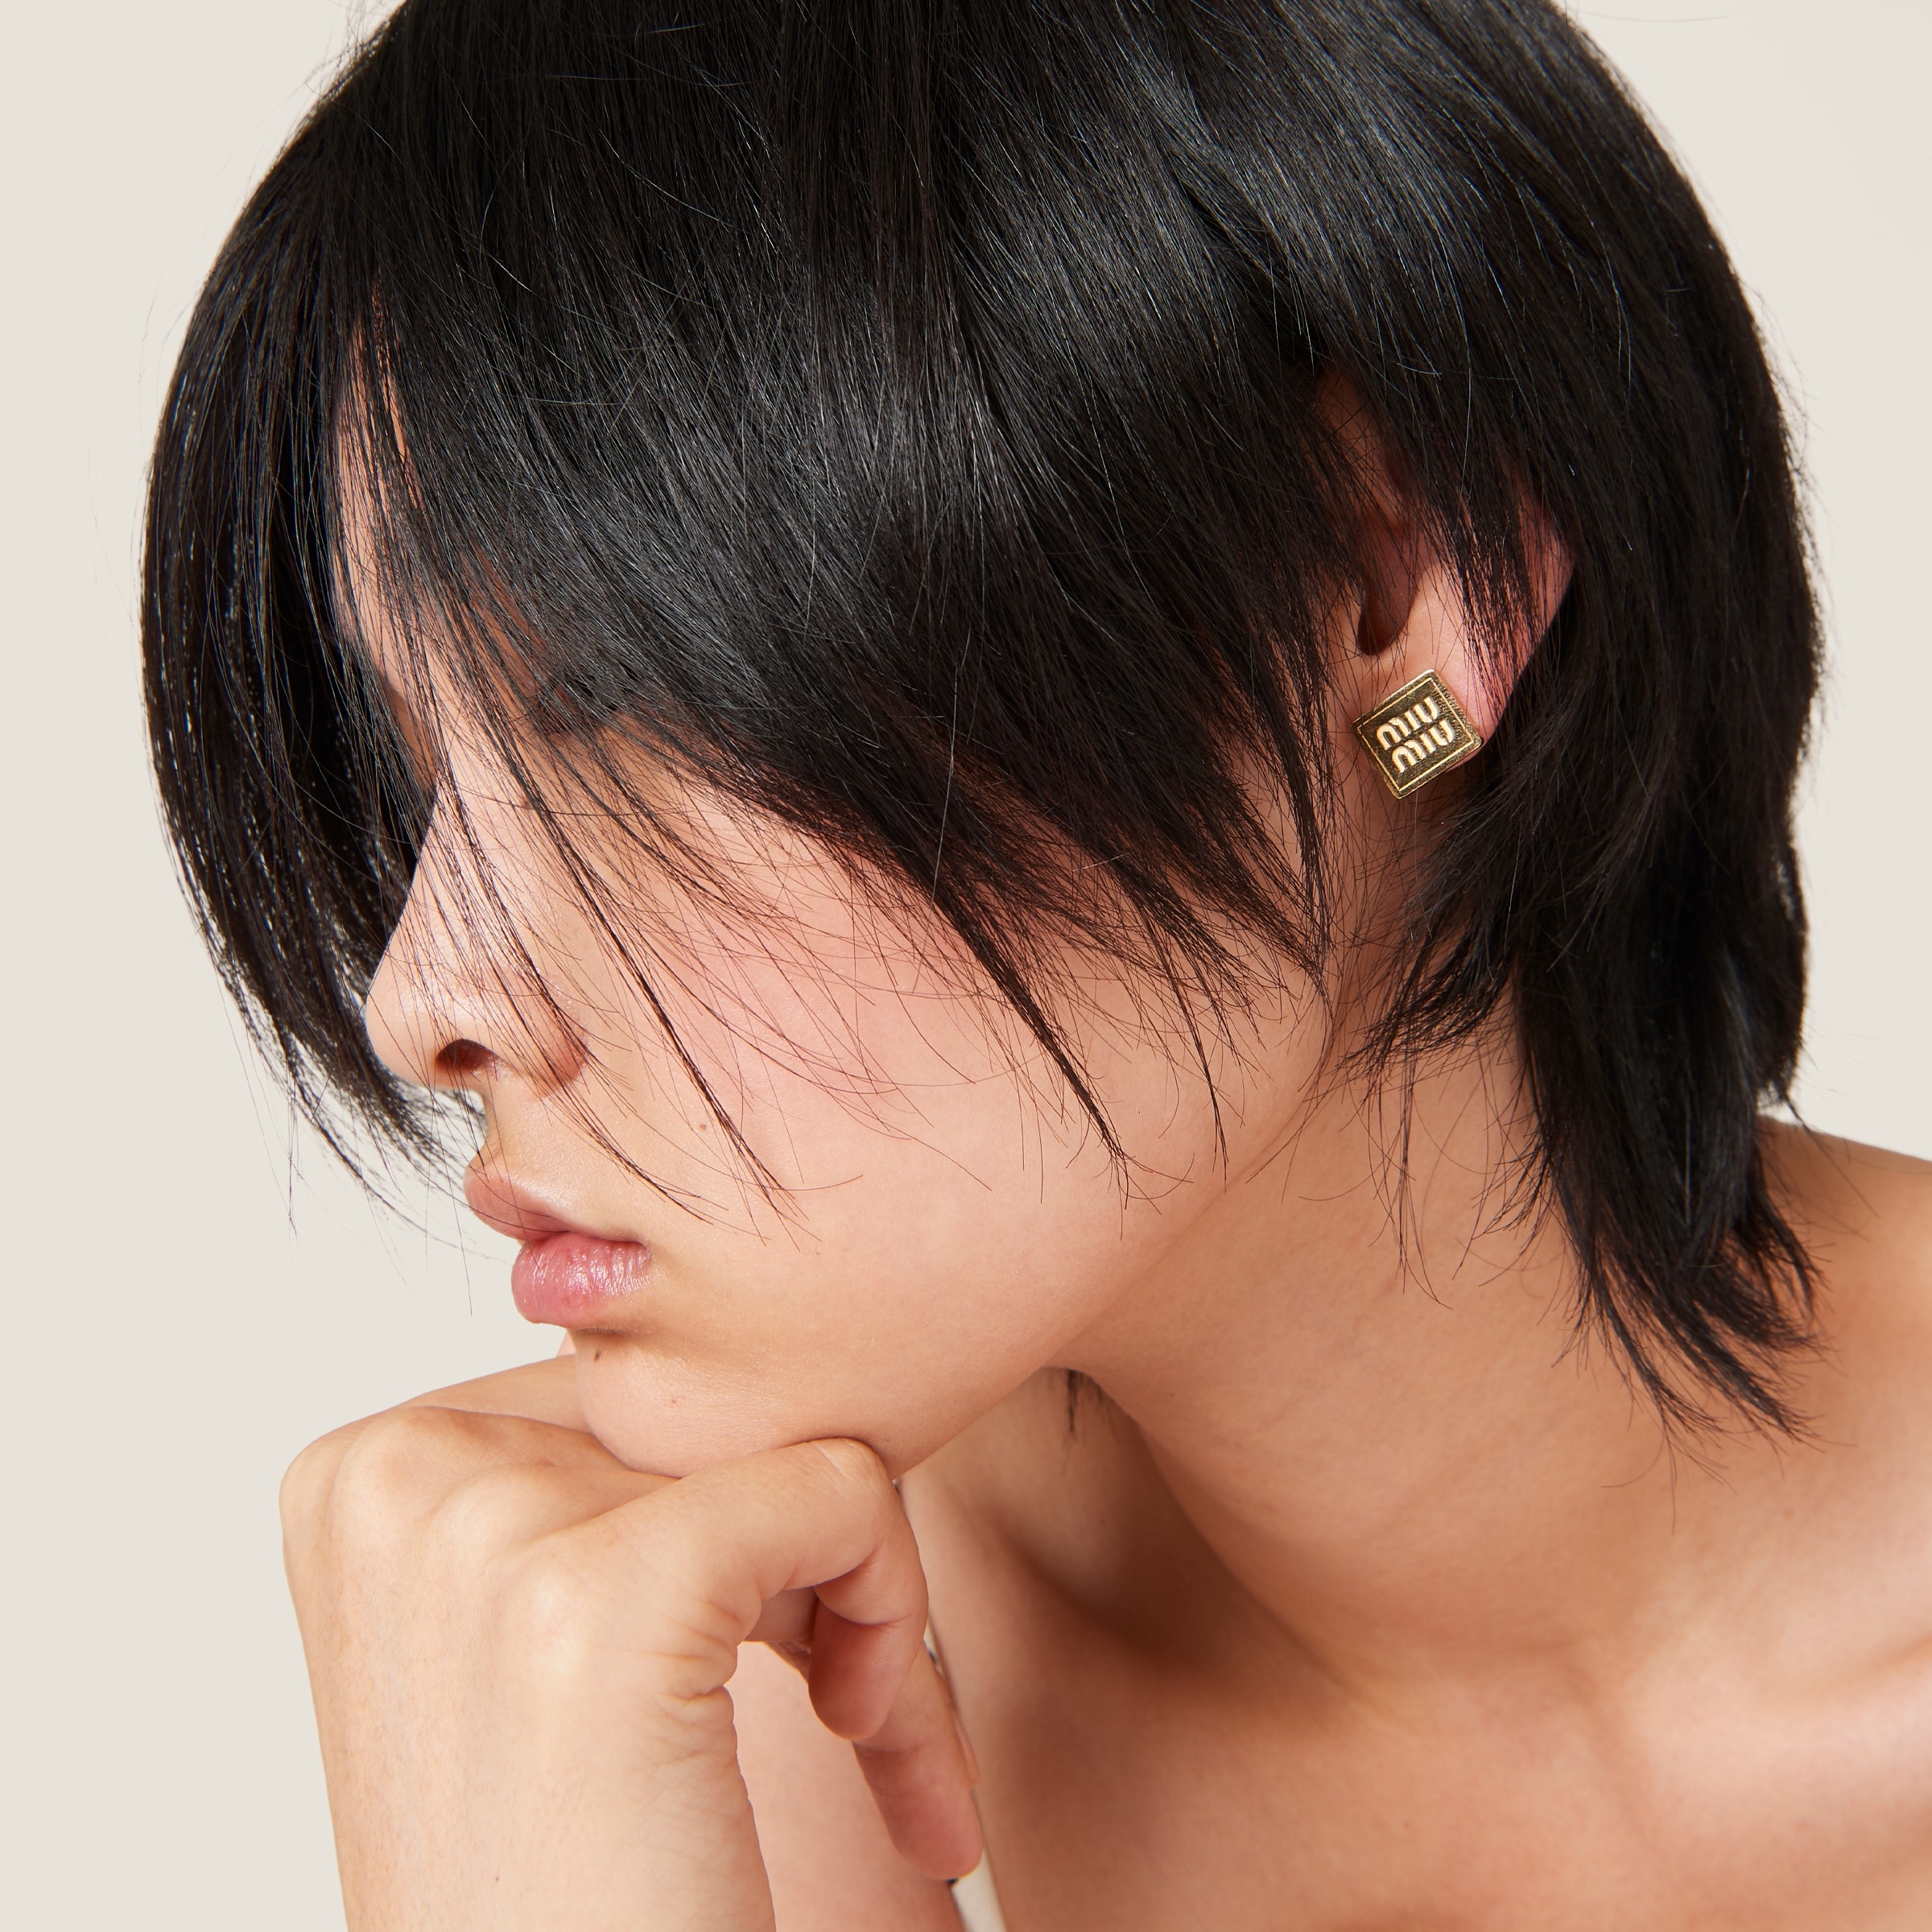 Metal earrings - 2